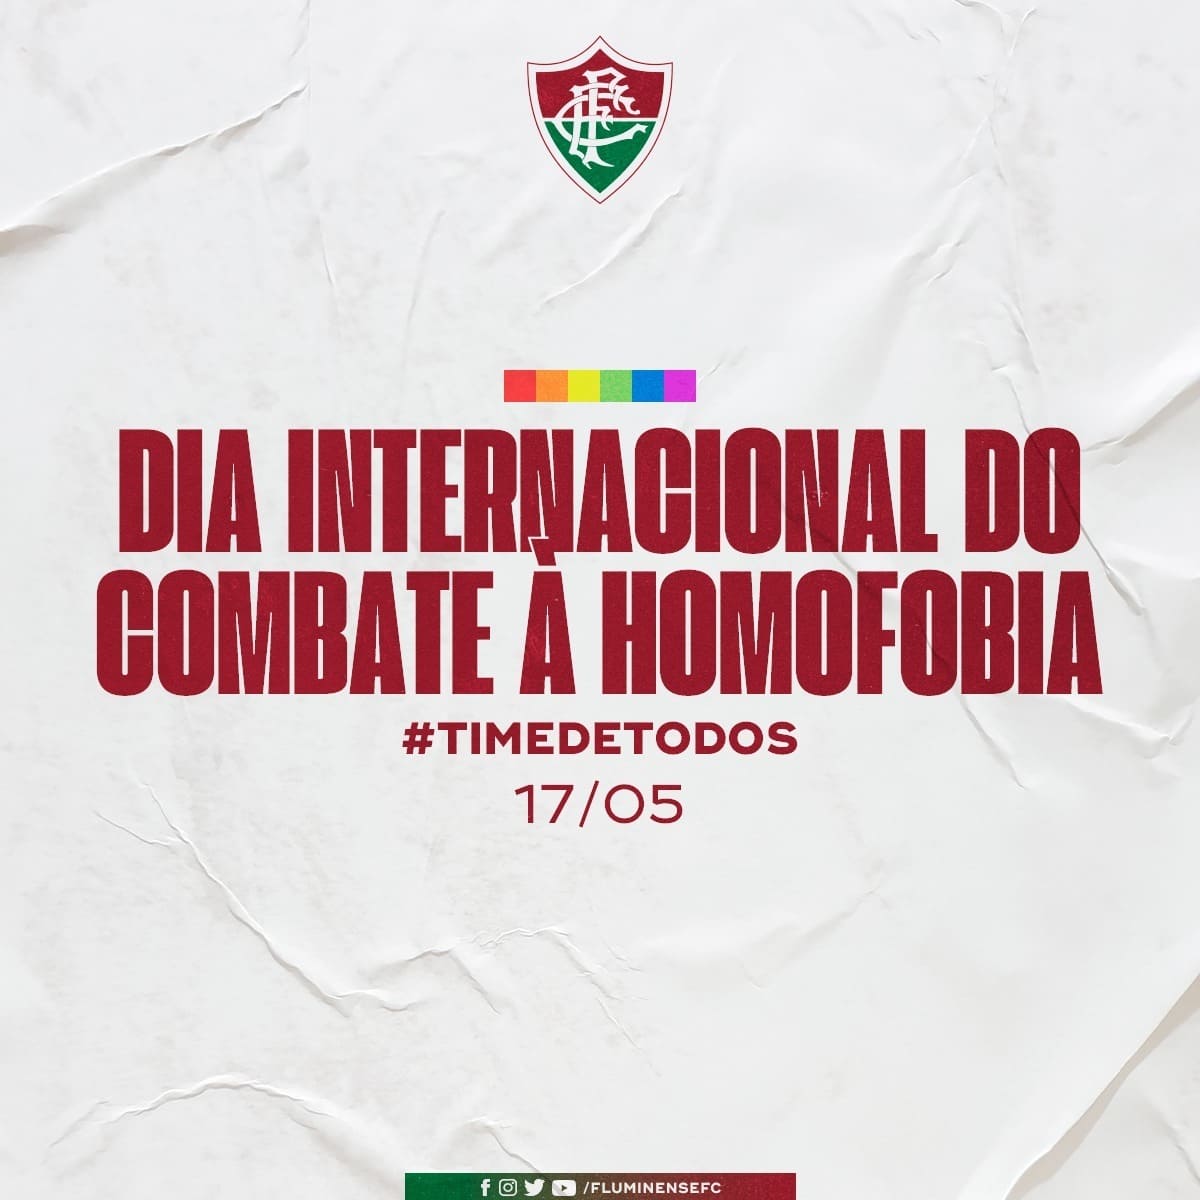 O Fluminense reforçou que é necessária a luta diária contra a LGBTfobia.